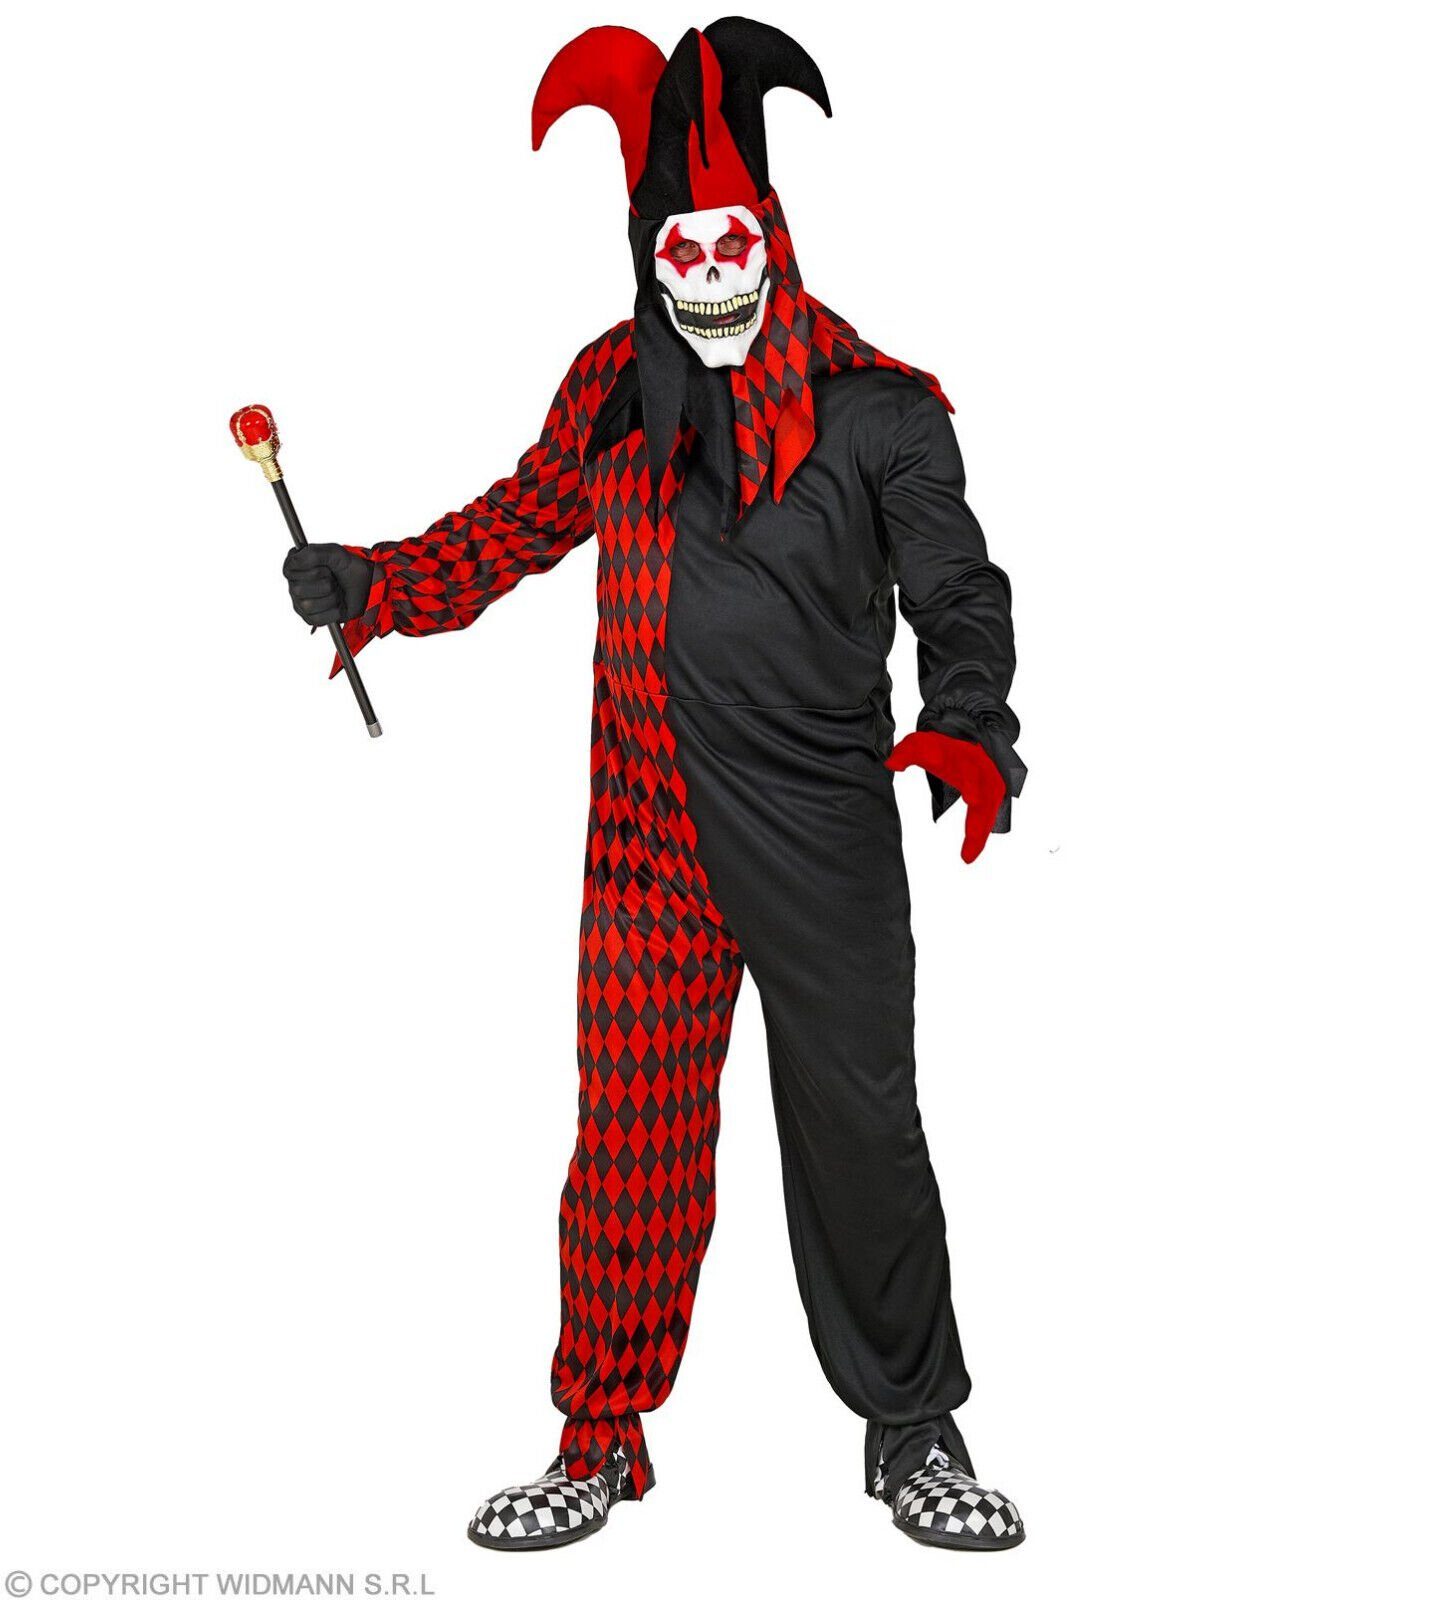 Widmann S.r.l. Clown-Kostüm Hofnarr Harlekin Kostüm mit Maske